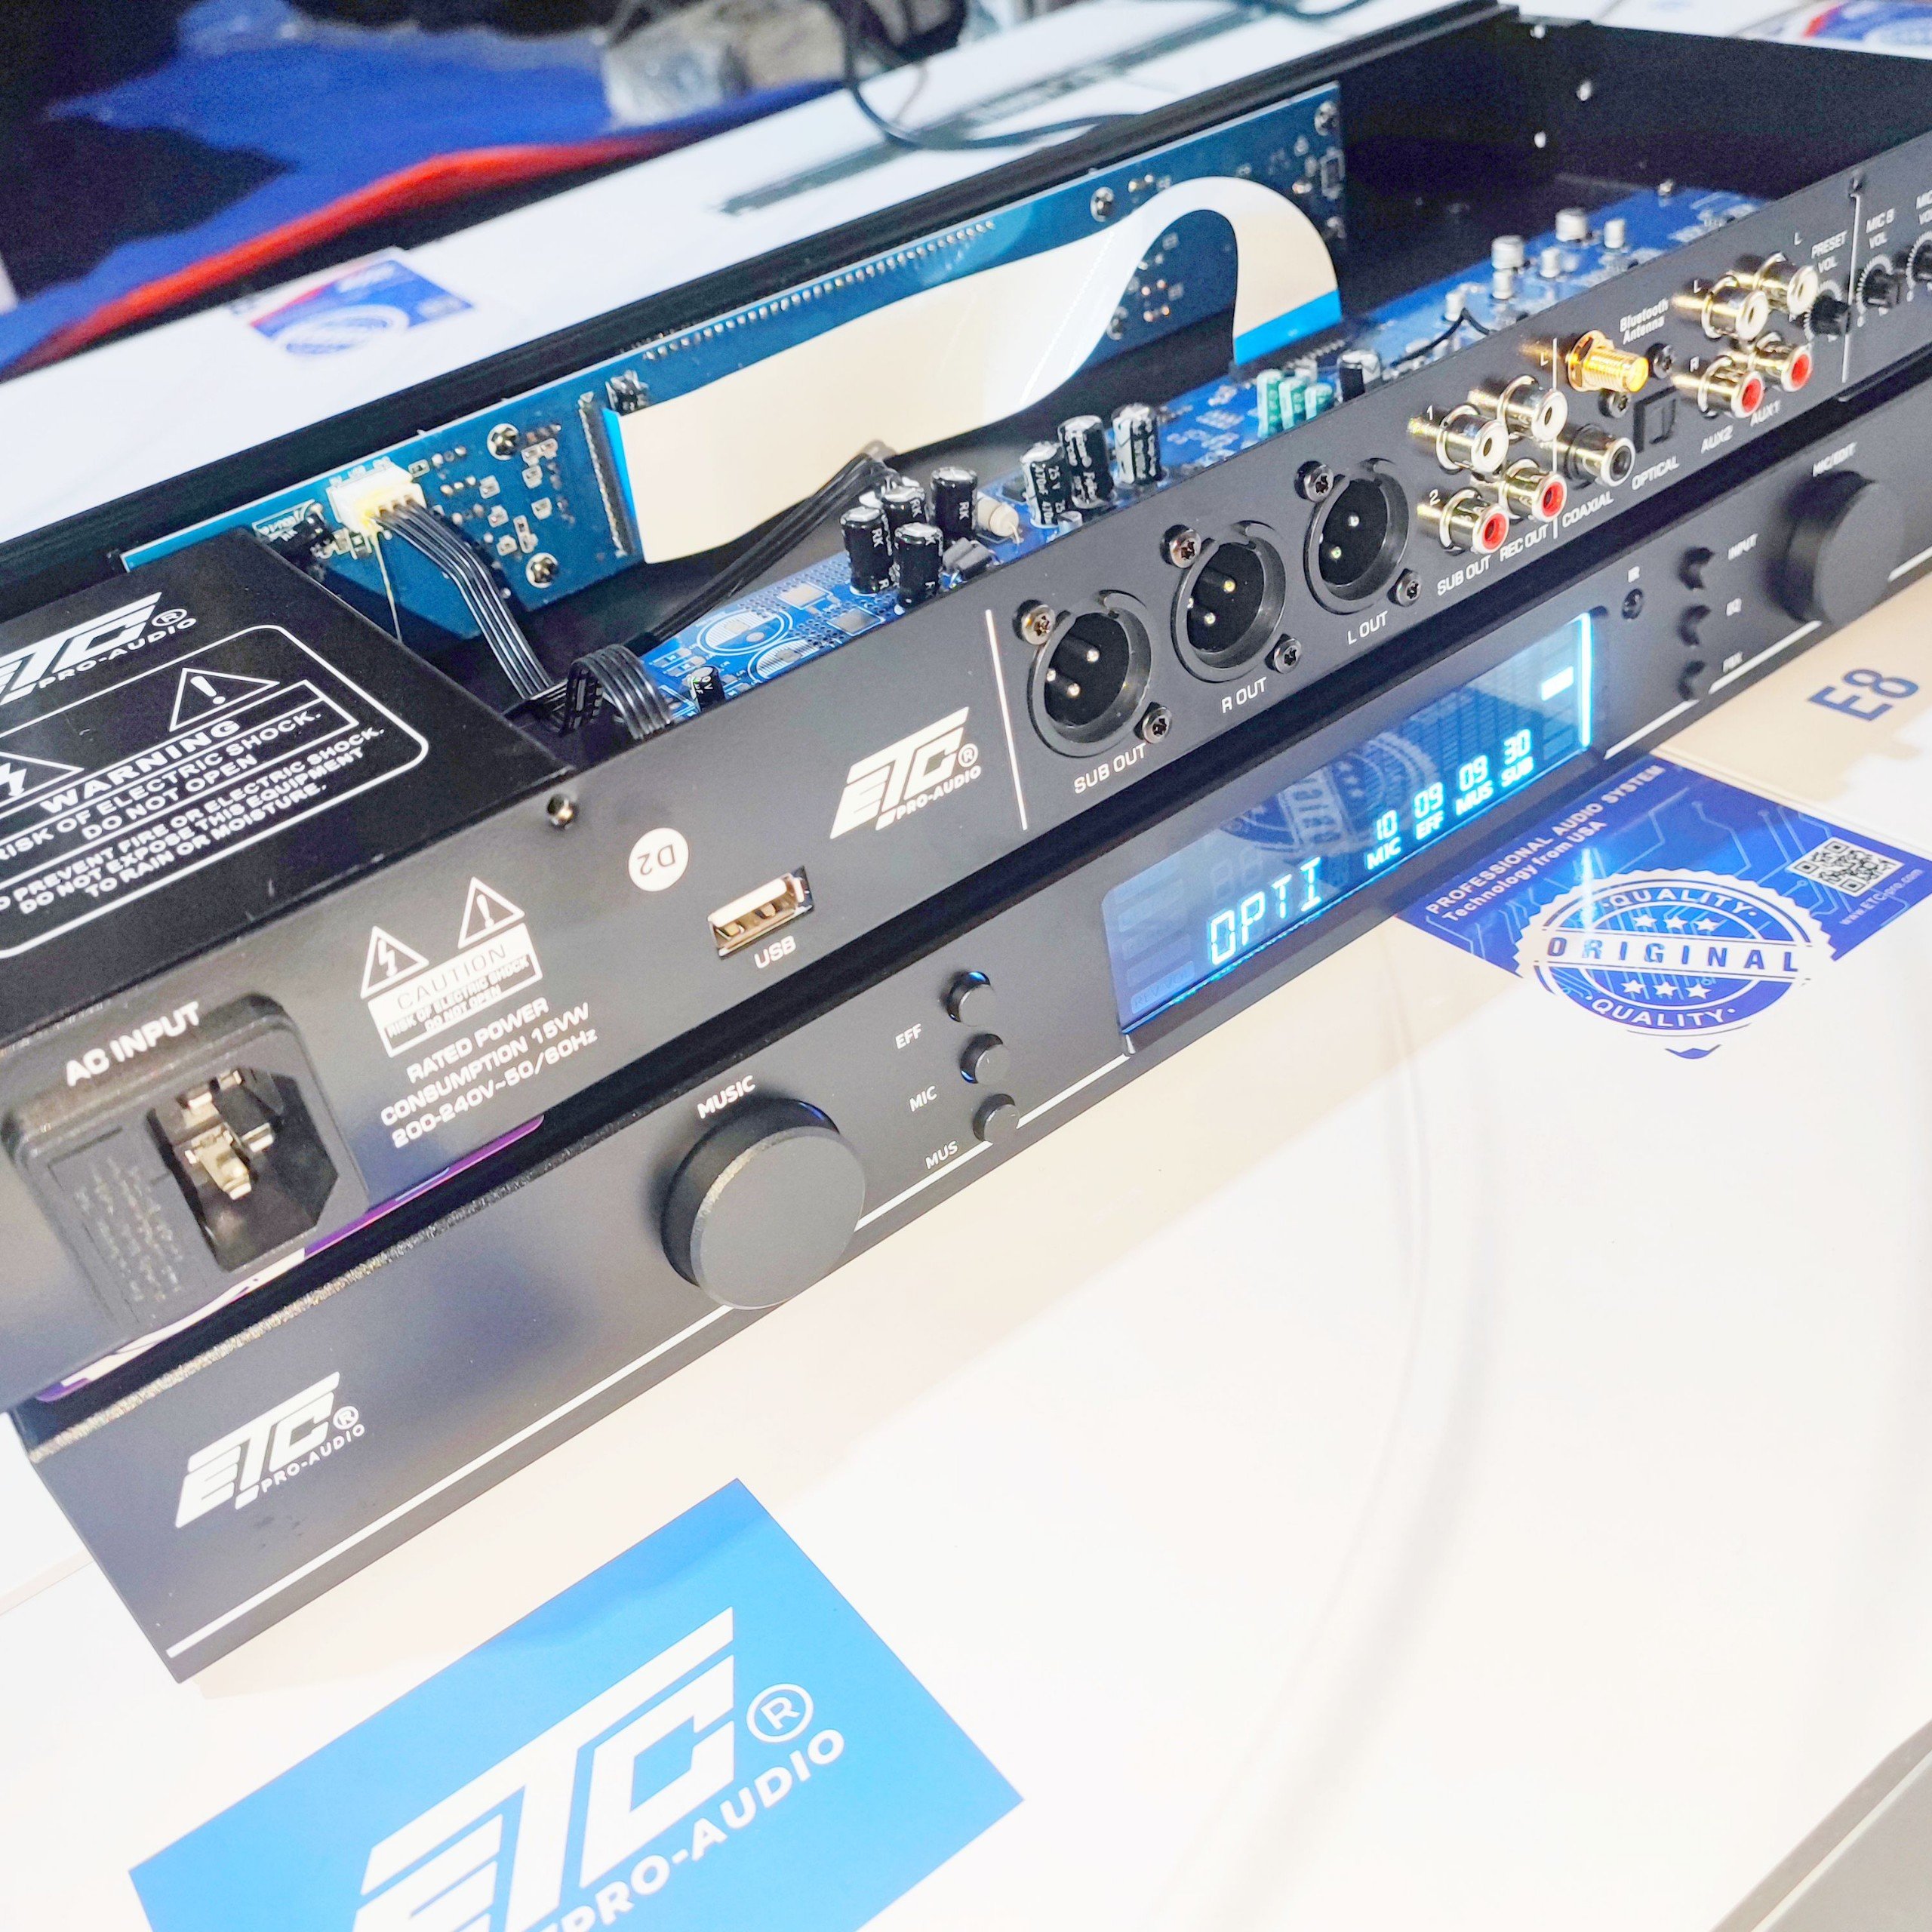 vang cơ lai số ETC E8 E 8 cao cấp phong cách châu âu nhiều chế độ chống hú giải mã âm thanh số cắt sub cổng quang blueto